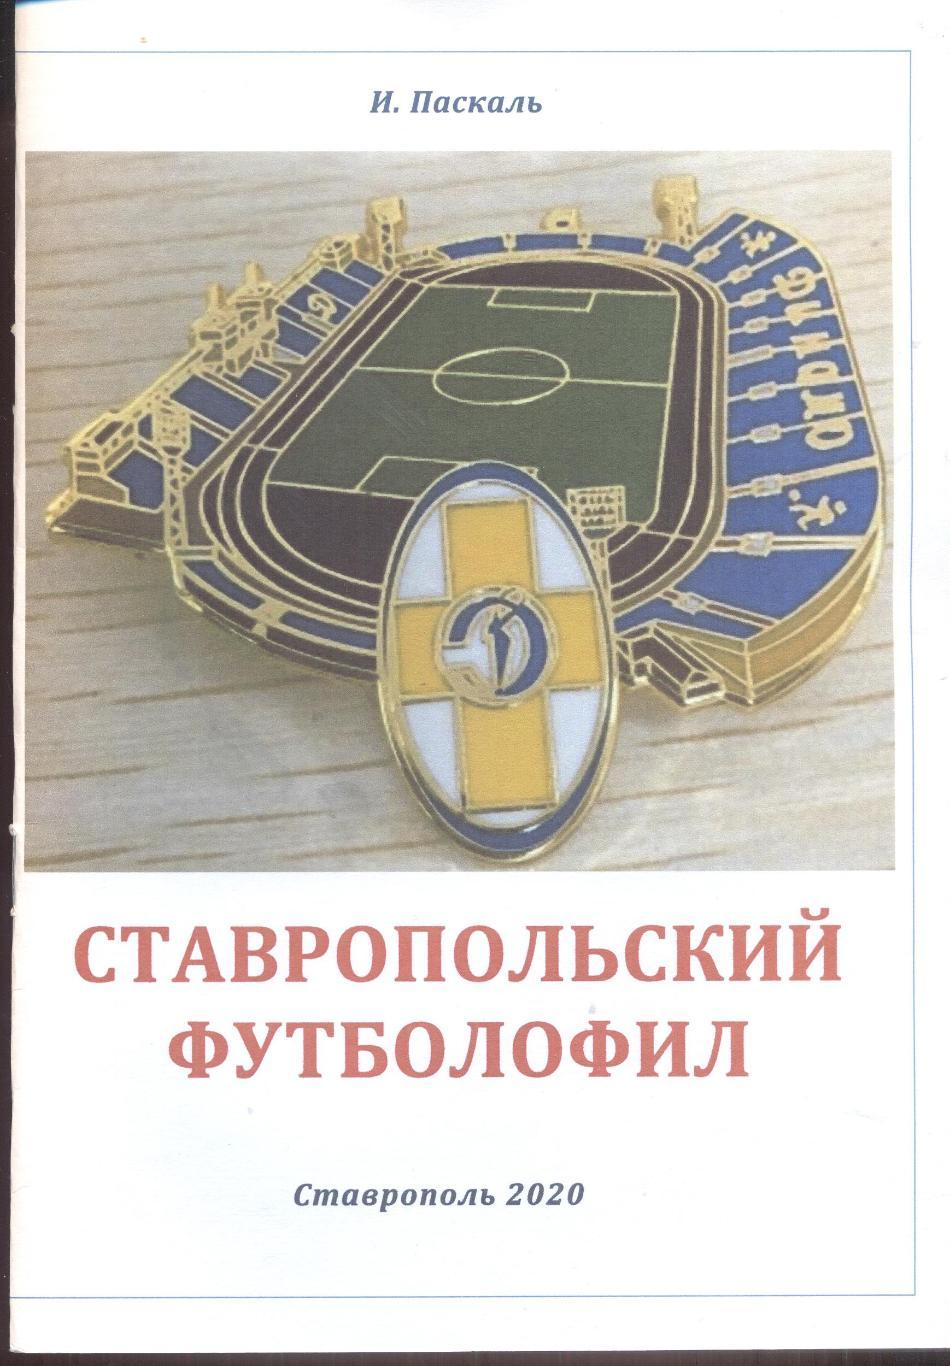 РАСПРОДАЖА ставропольский футболофил №17, выпуск 2020 года